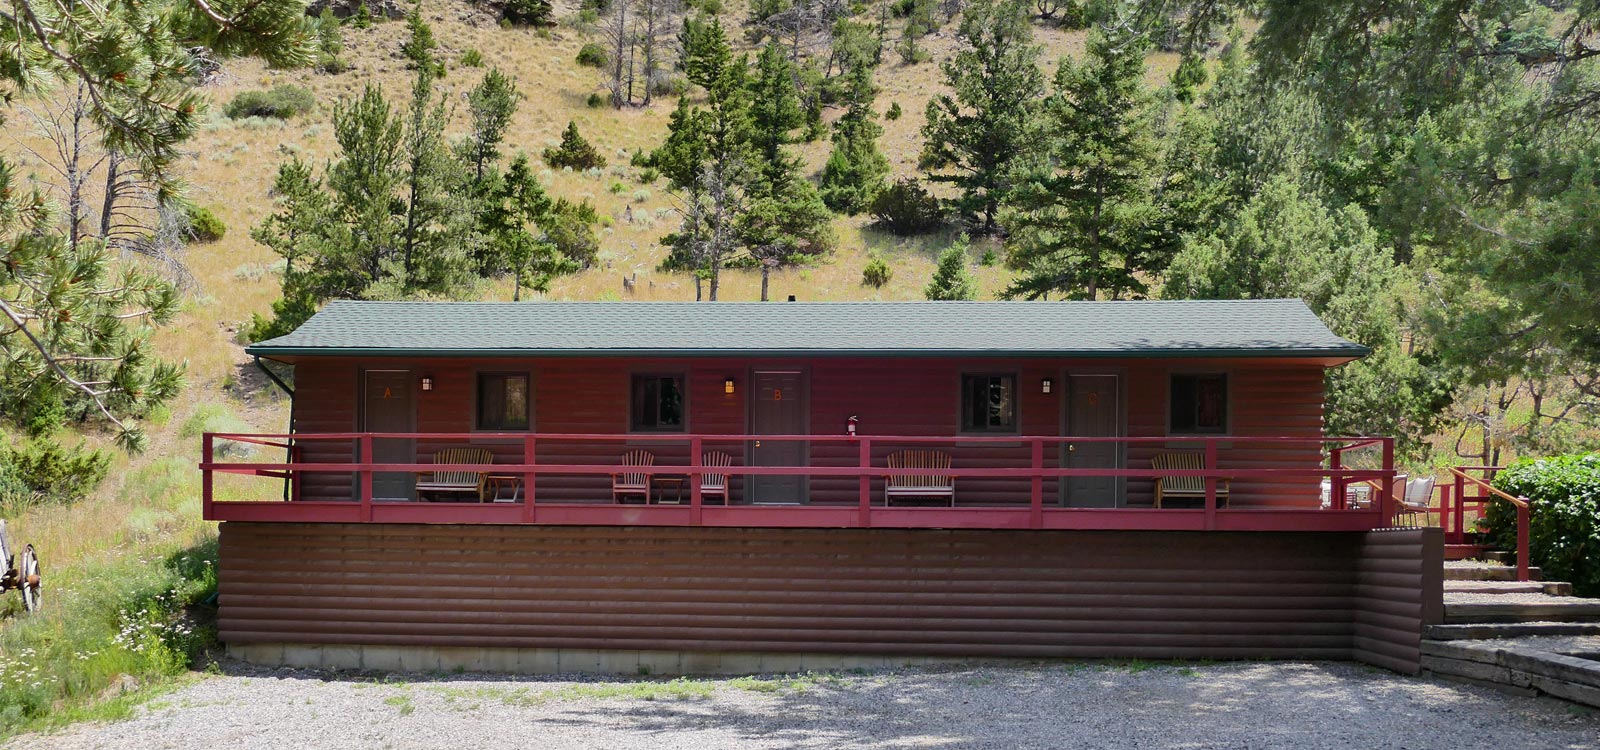 cabins near yellowstone - Buckaroo King Cabin